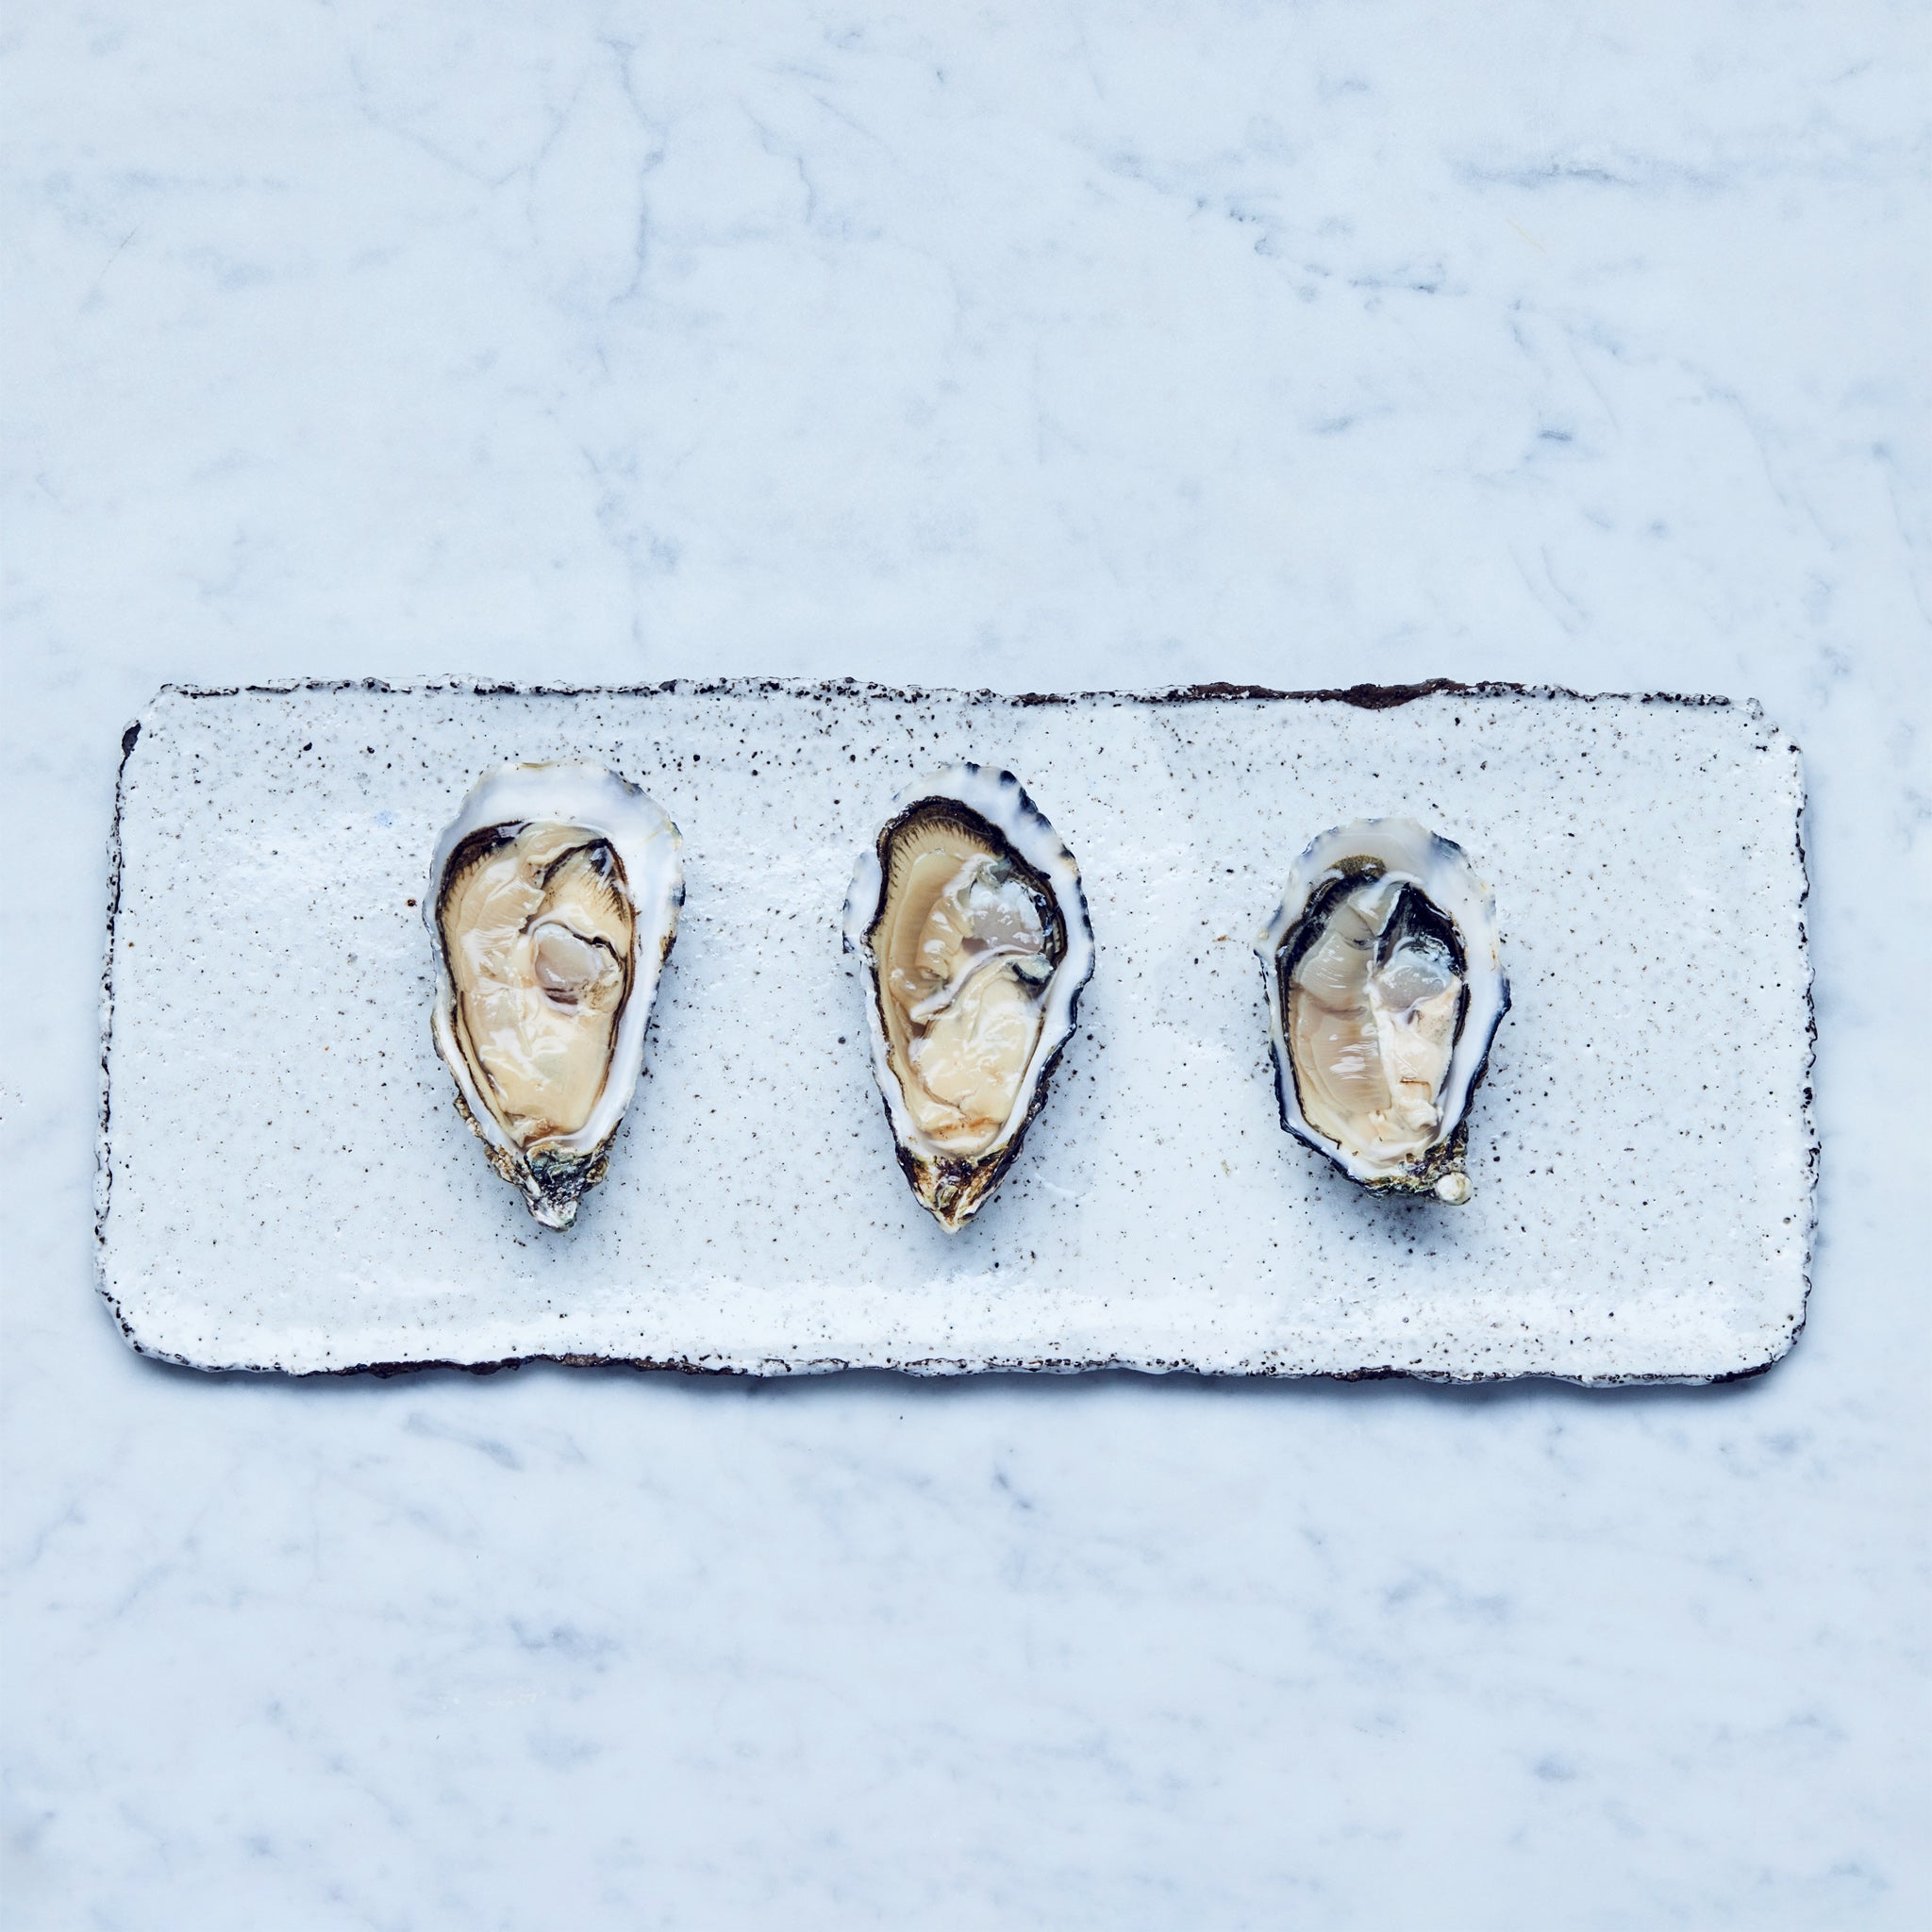 Drei frische Gilleardeu Austern auf einem weißen, rechteckigen Teller. Gillardeau austern kaufen.